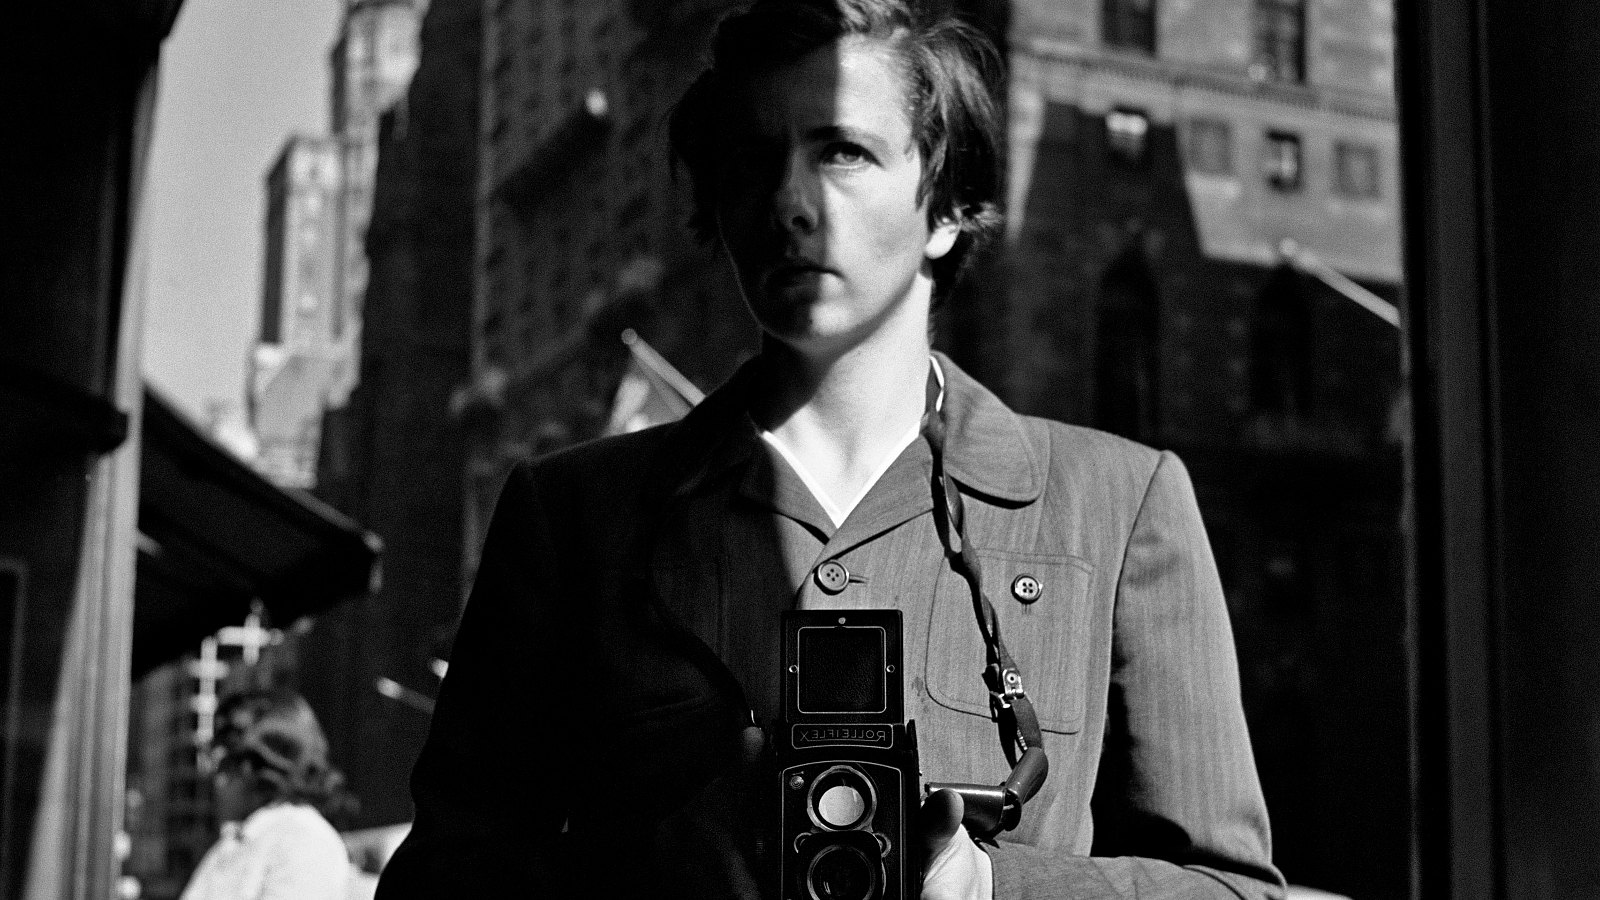 Kuvassa on Vivian Maier kamera kädessään vyötärön alapuolella.  Kuva on otettu New Yorkissa kadulla ja se on msuta-valkoinen.